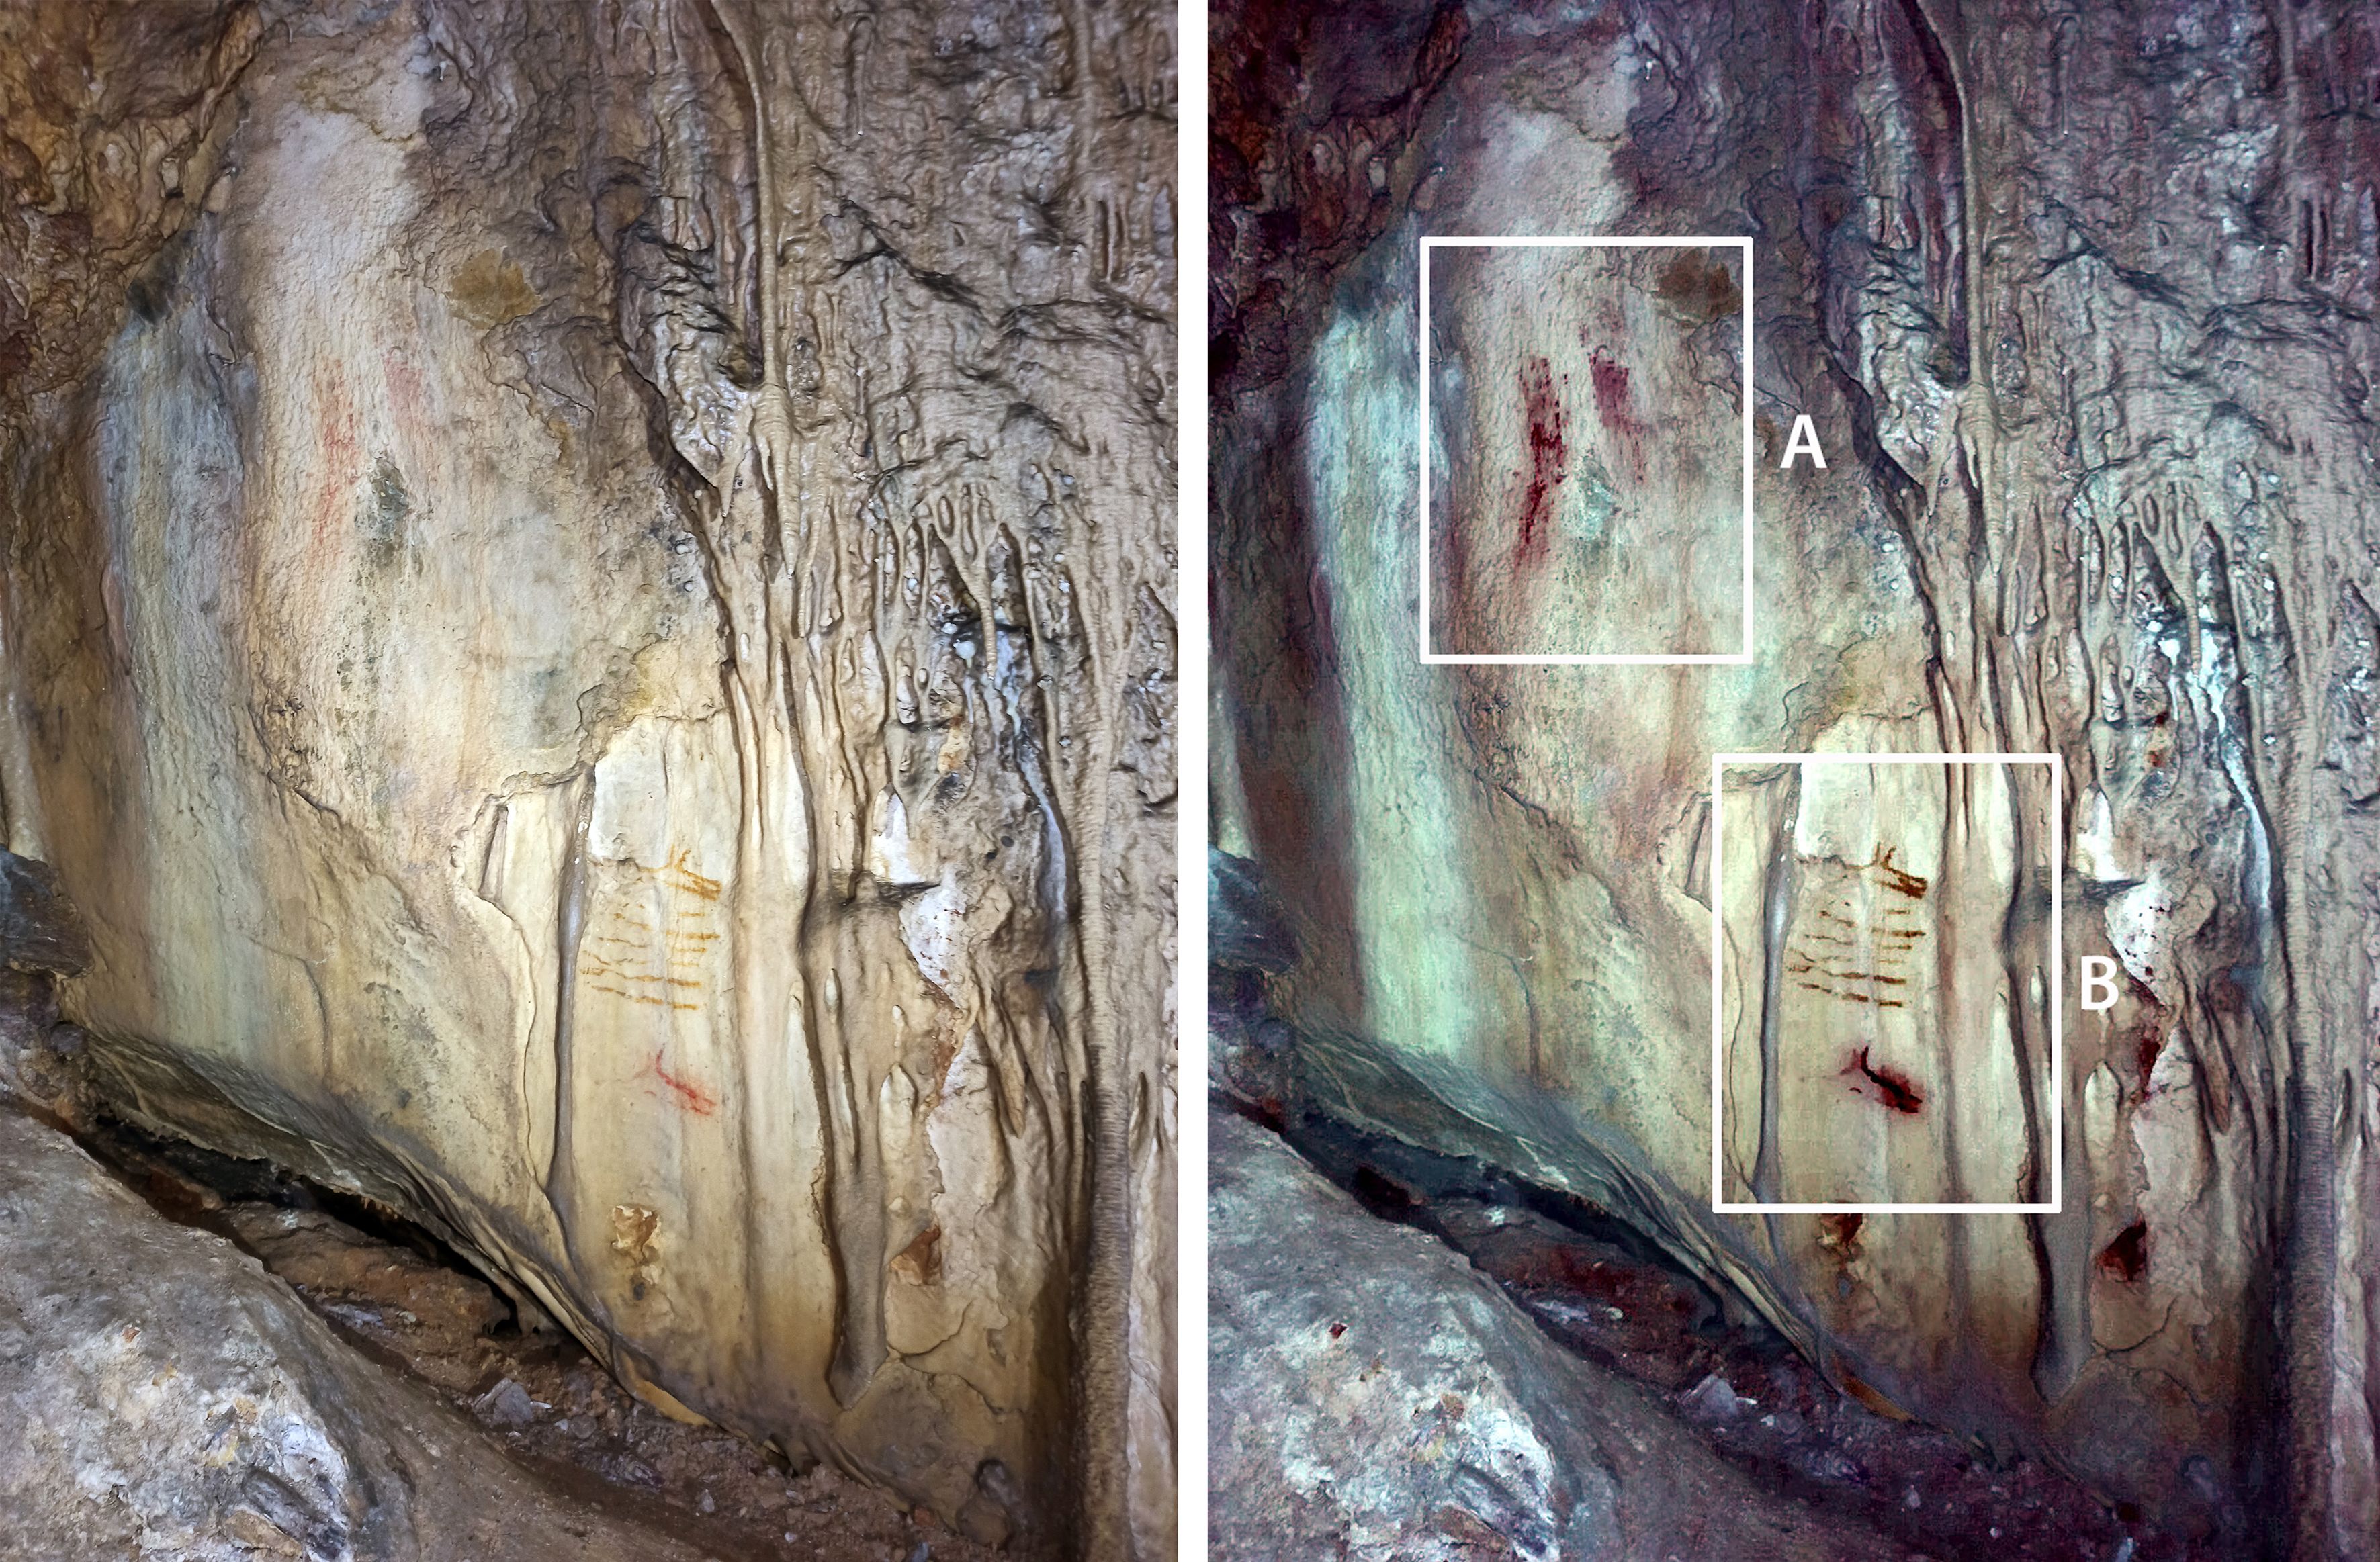 Datan obras de arte rupestre con más de 50.000 años en la Cueva de Ardales en Málaga.